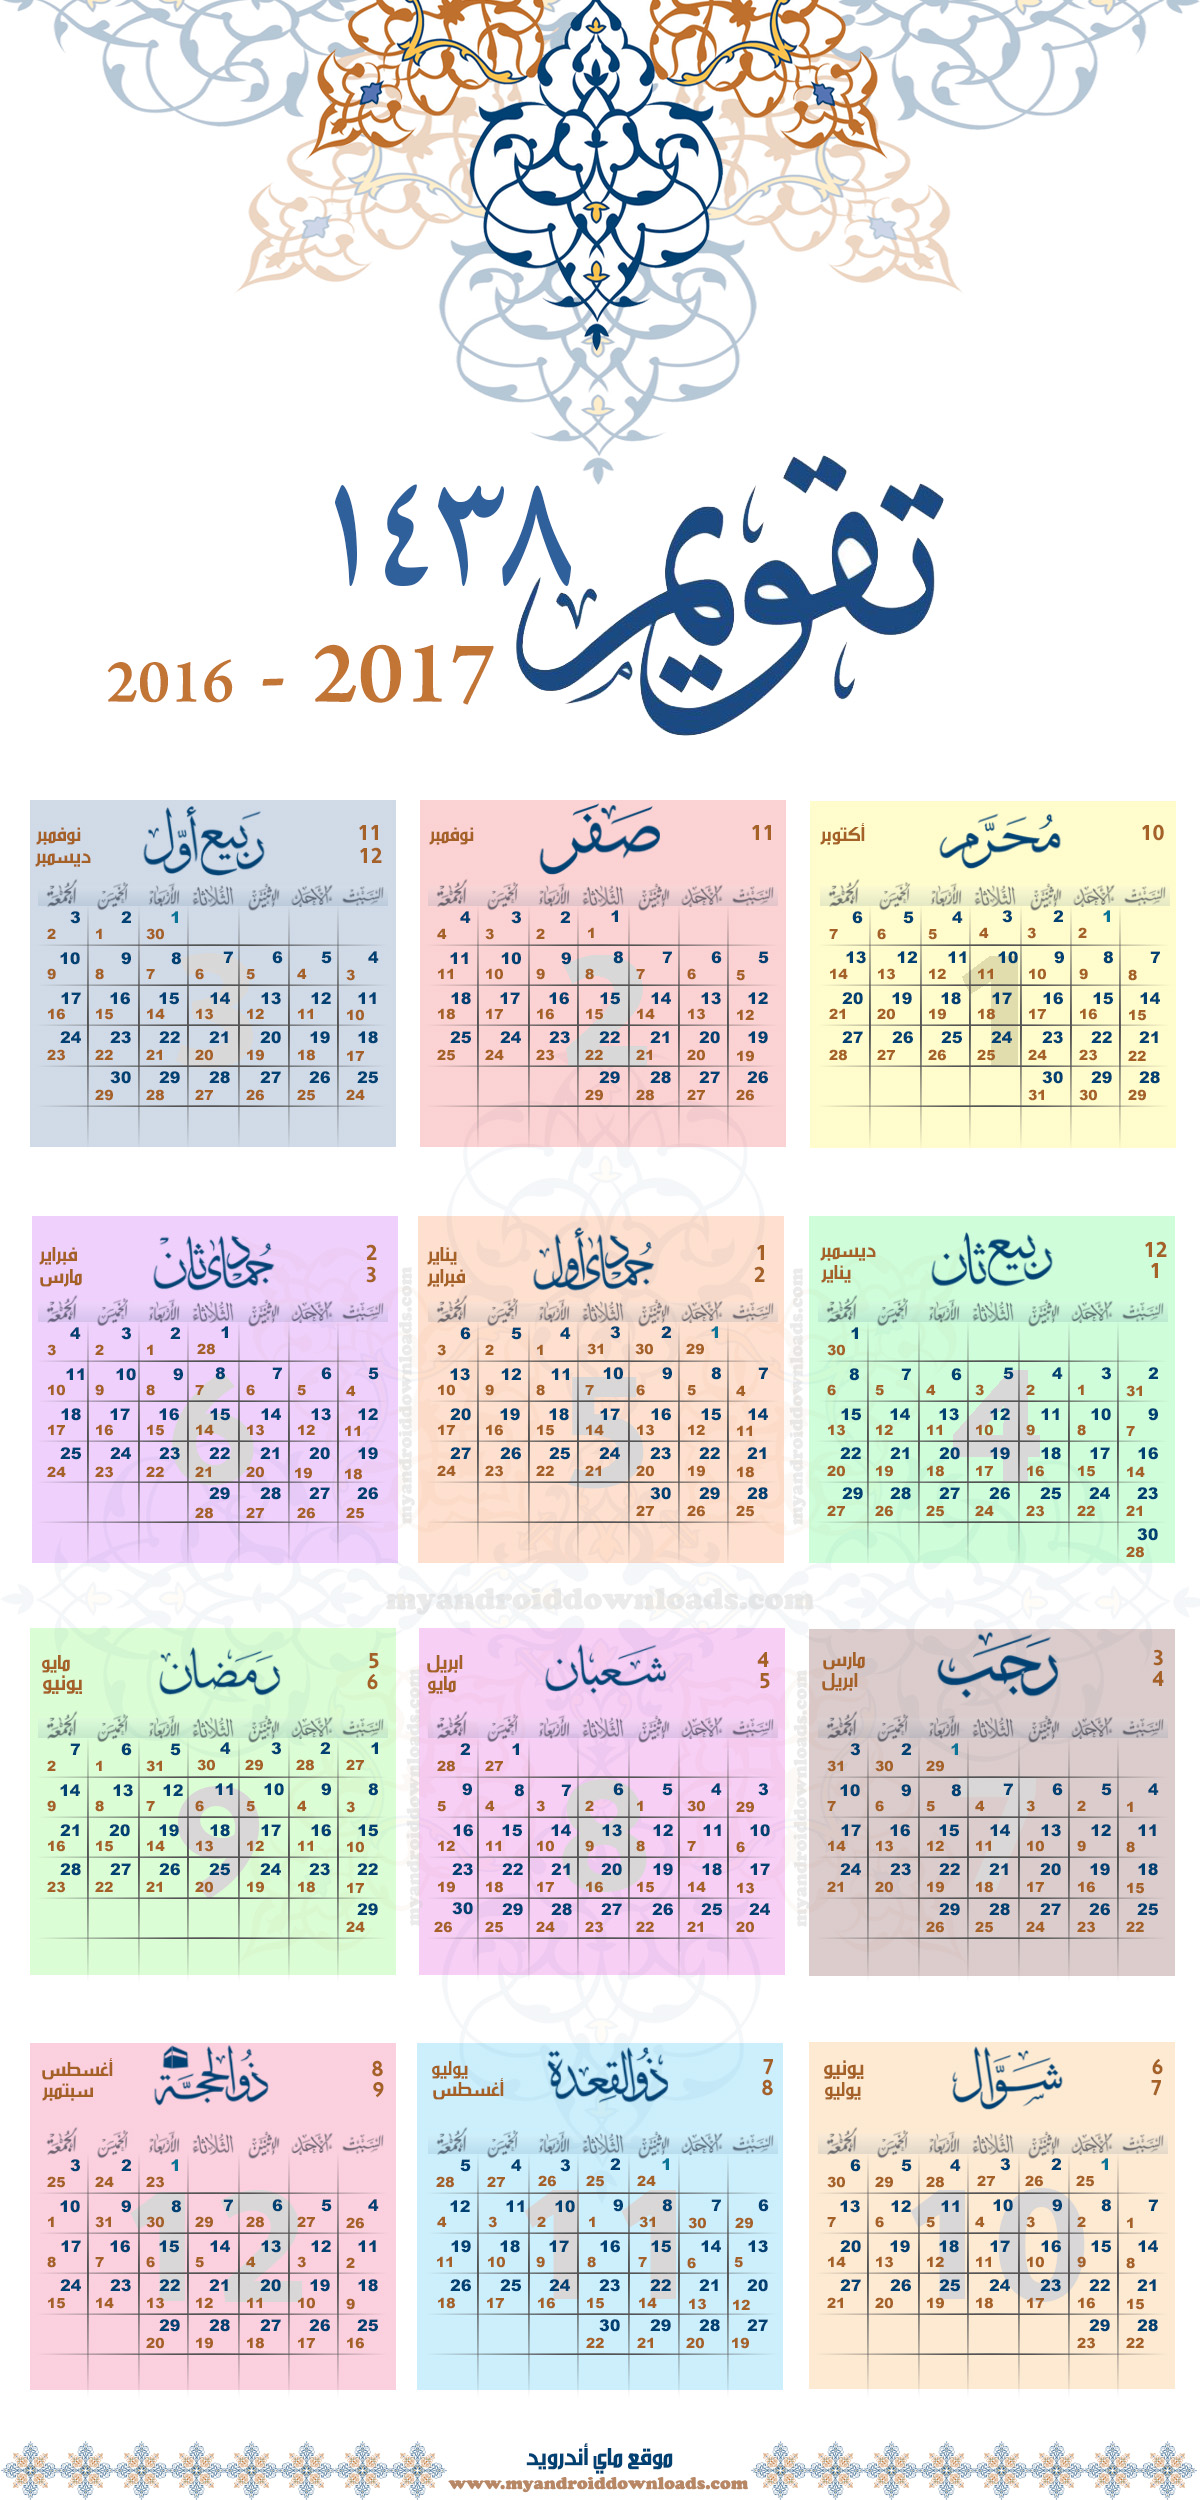 التقويم الهجري 1438 التقويم الهجري والميلادي لعام 2017 صورة للطباعة